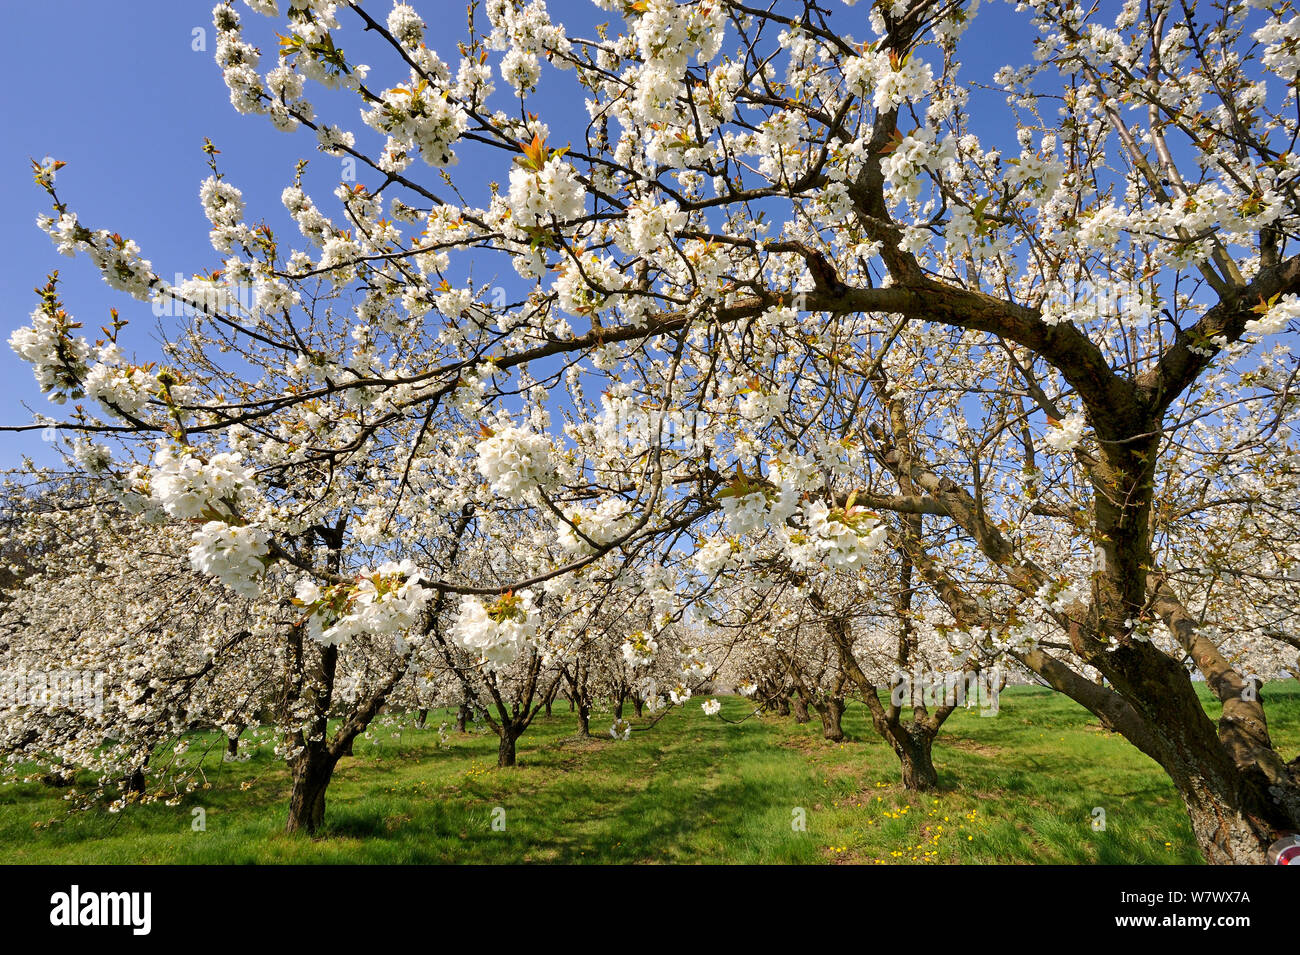 Verger en fleurs de cerisier (Prunus avium) au printemps, la chasse, Lorraine, France Banque D'Images